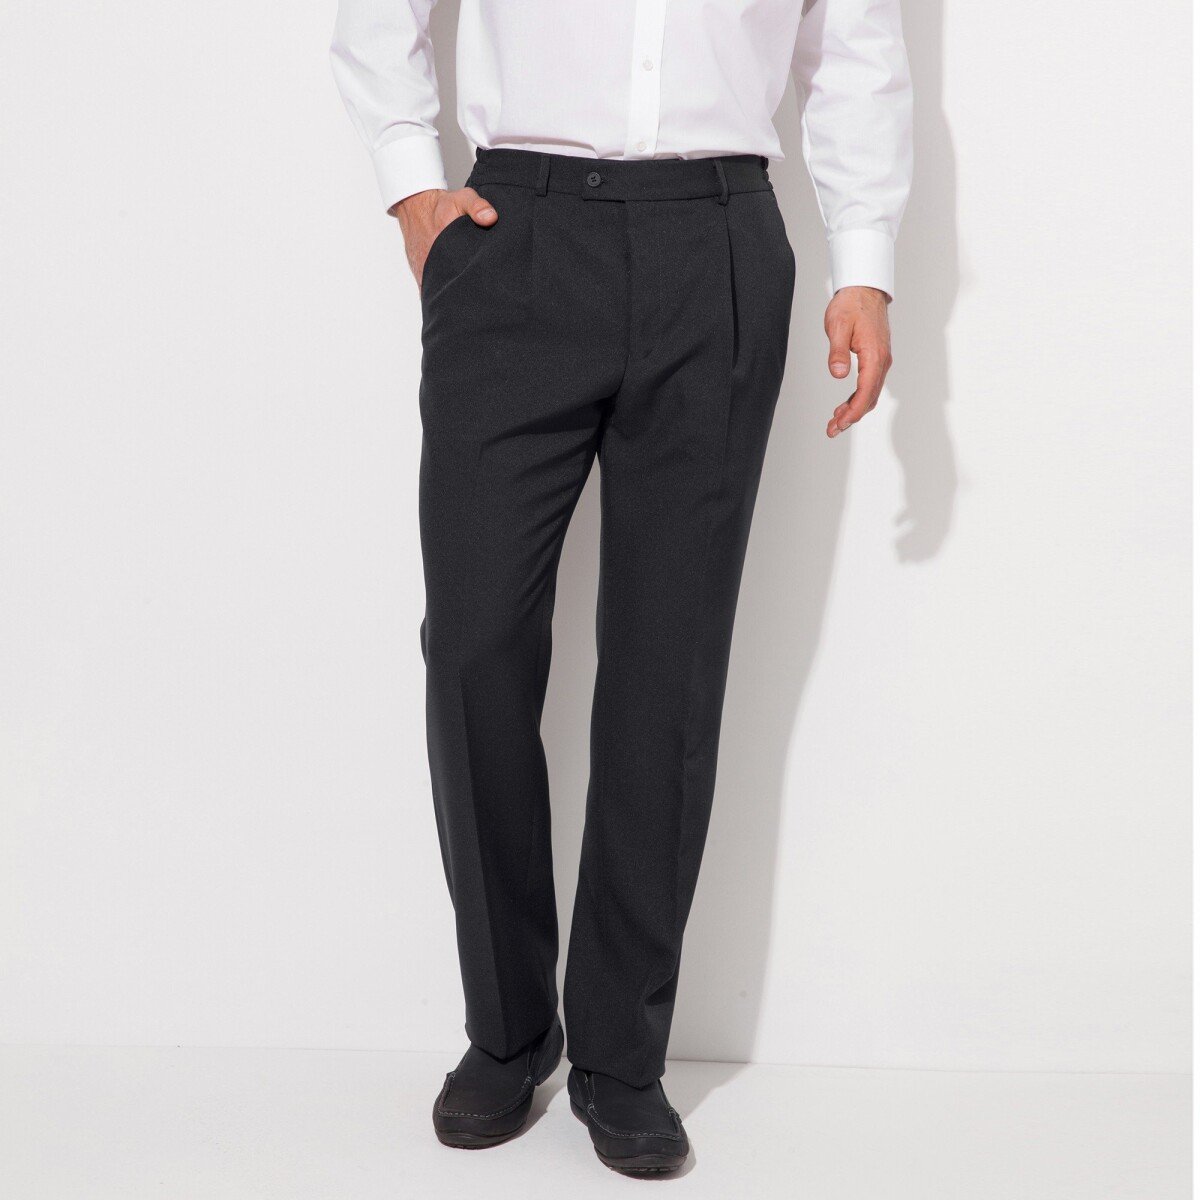 Blancheporte Kalhoty s pružným pasem, polyester/vlna šedá antracitová 58